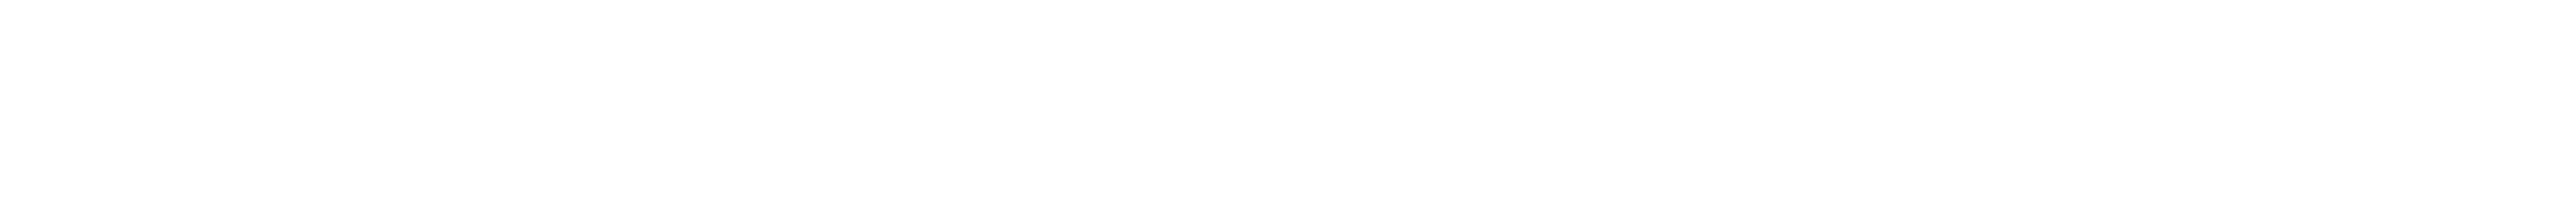 onlinesignature logo